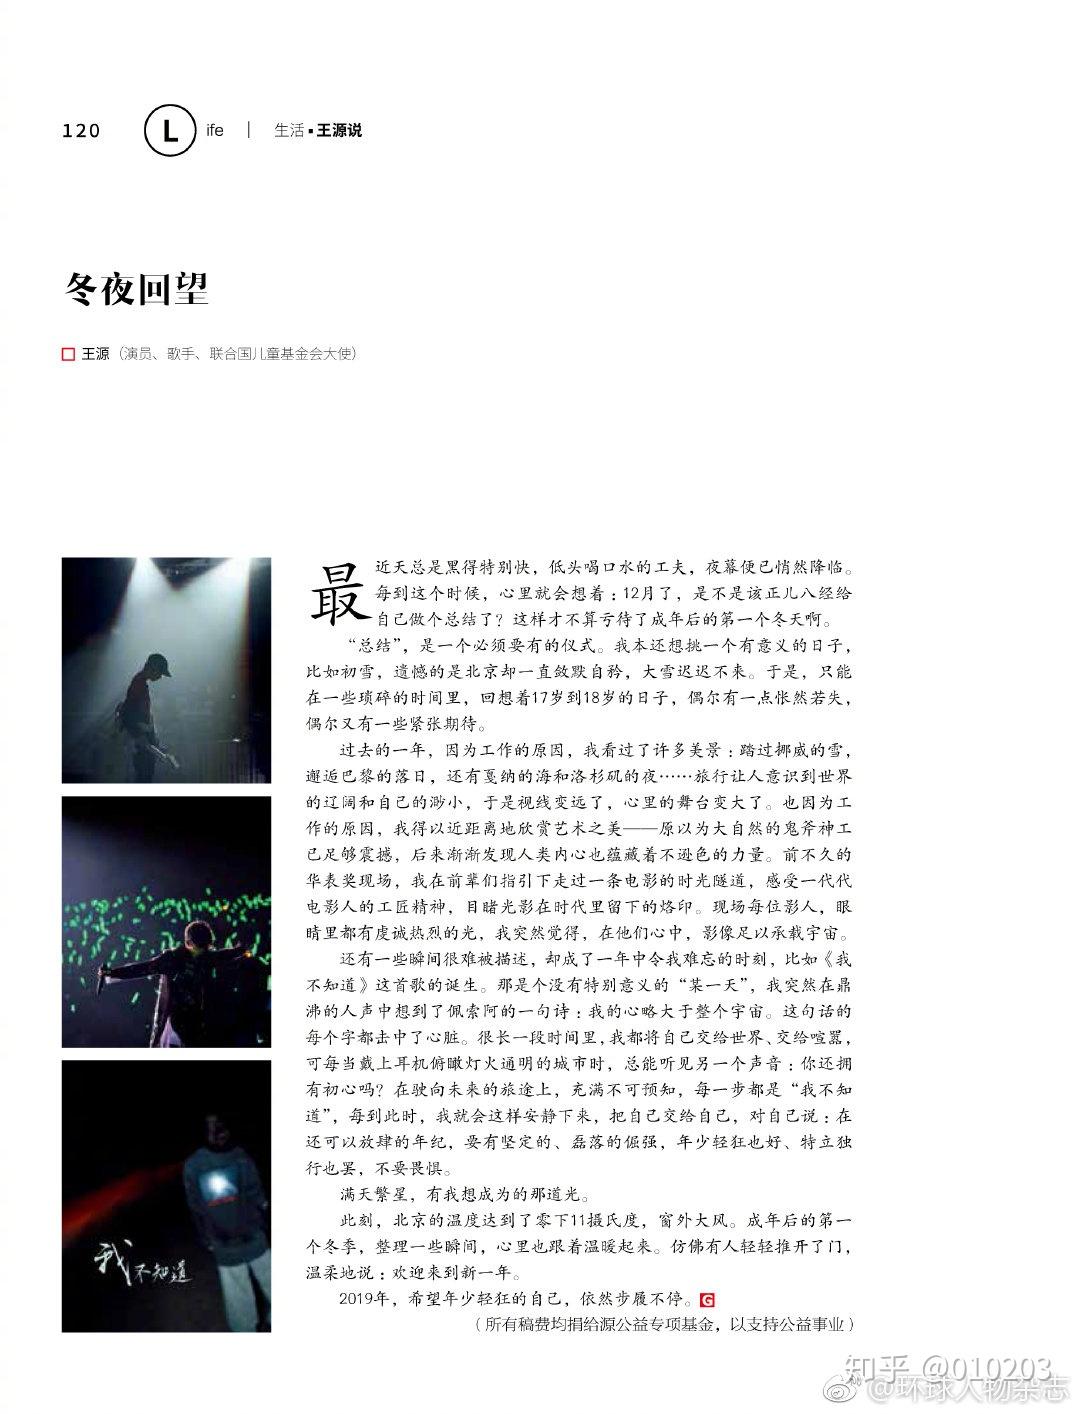 《环球人物》杂志专栏【王源说】——《冬夜回望》